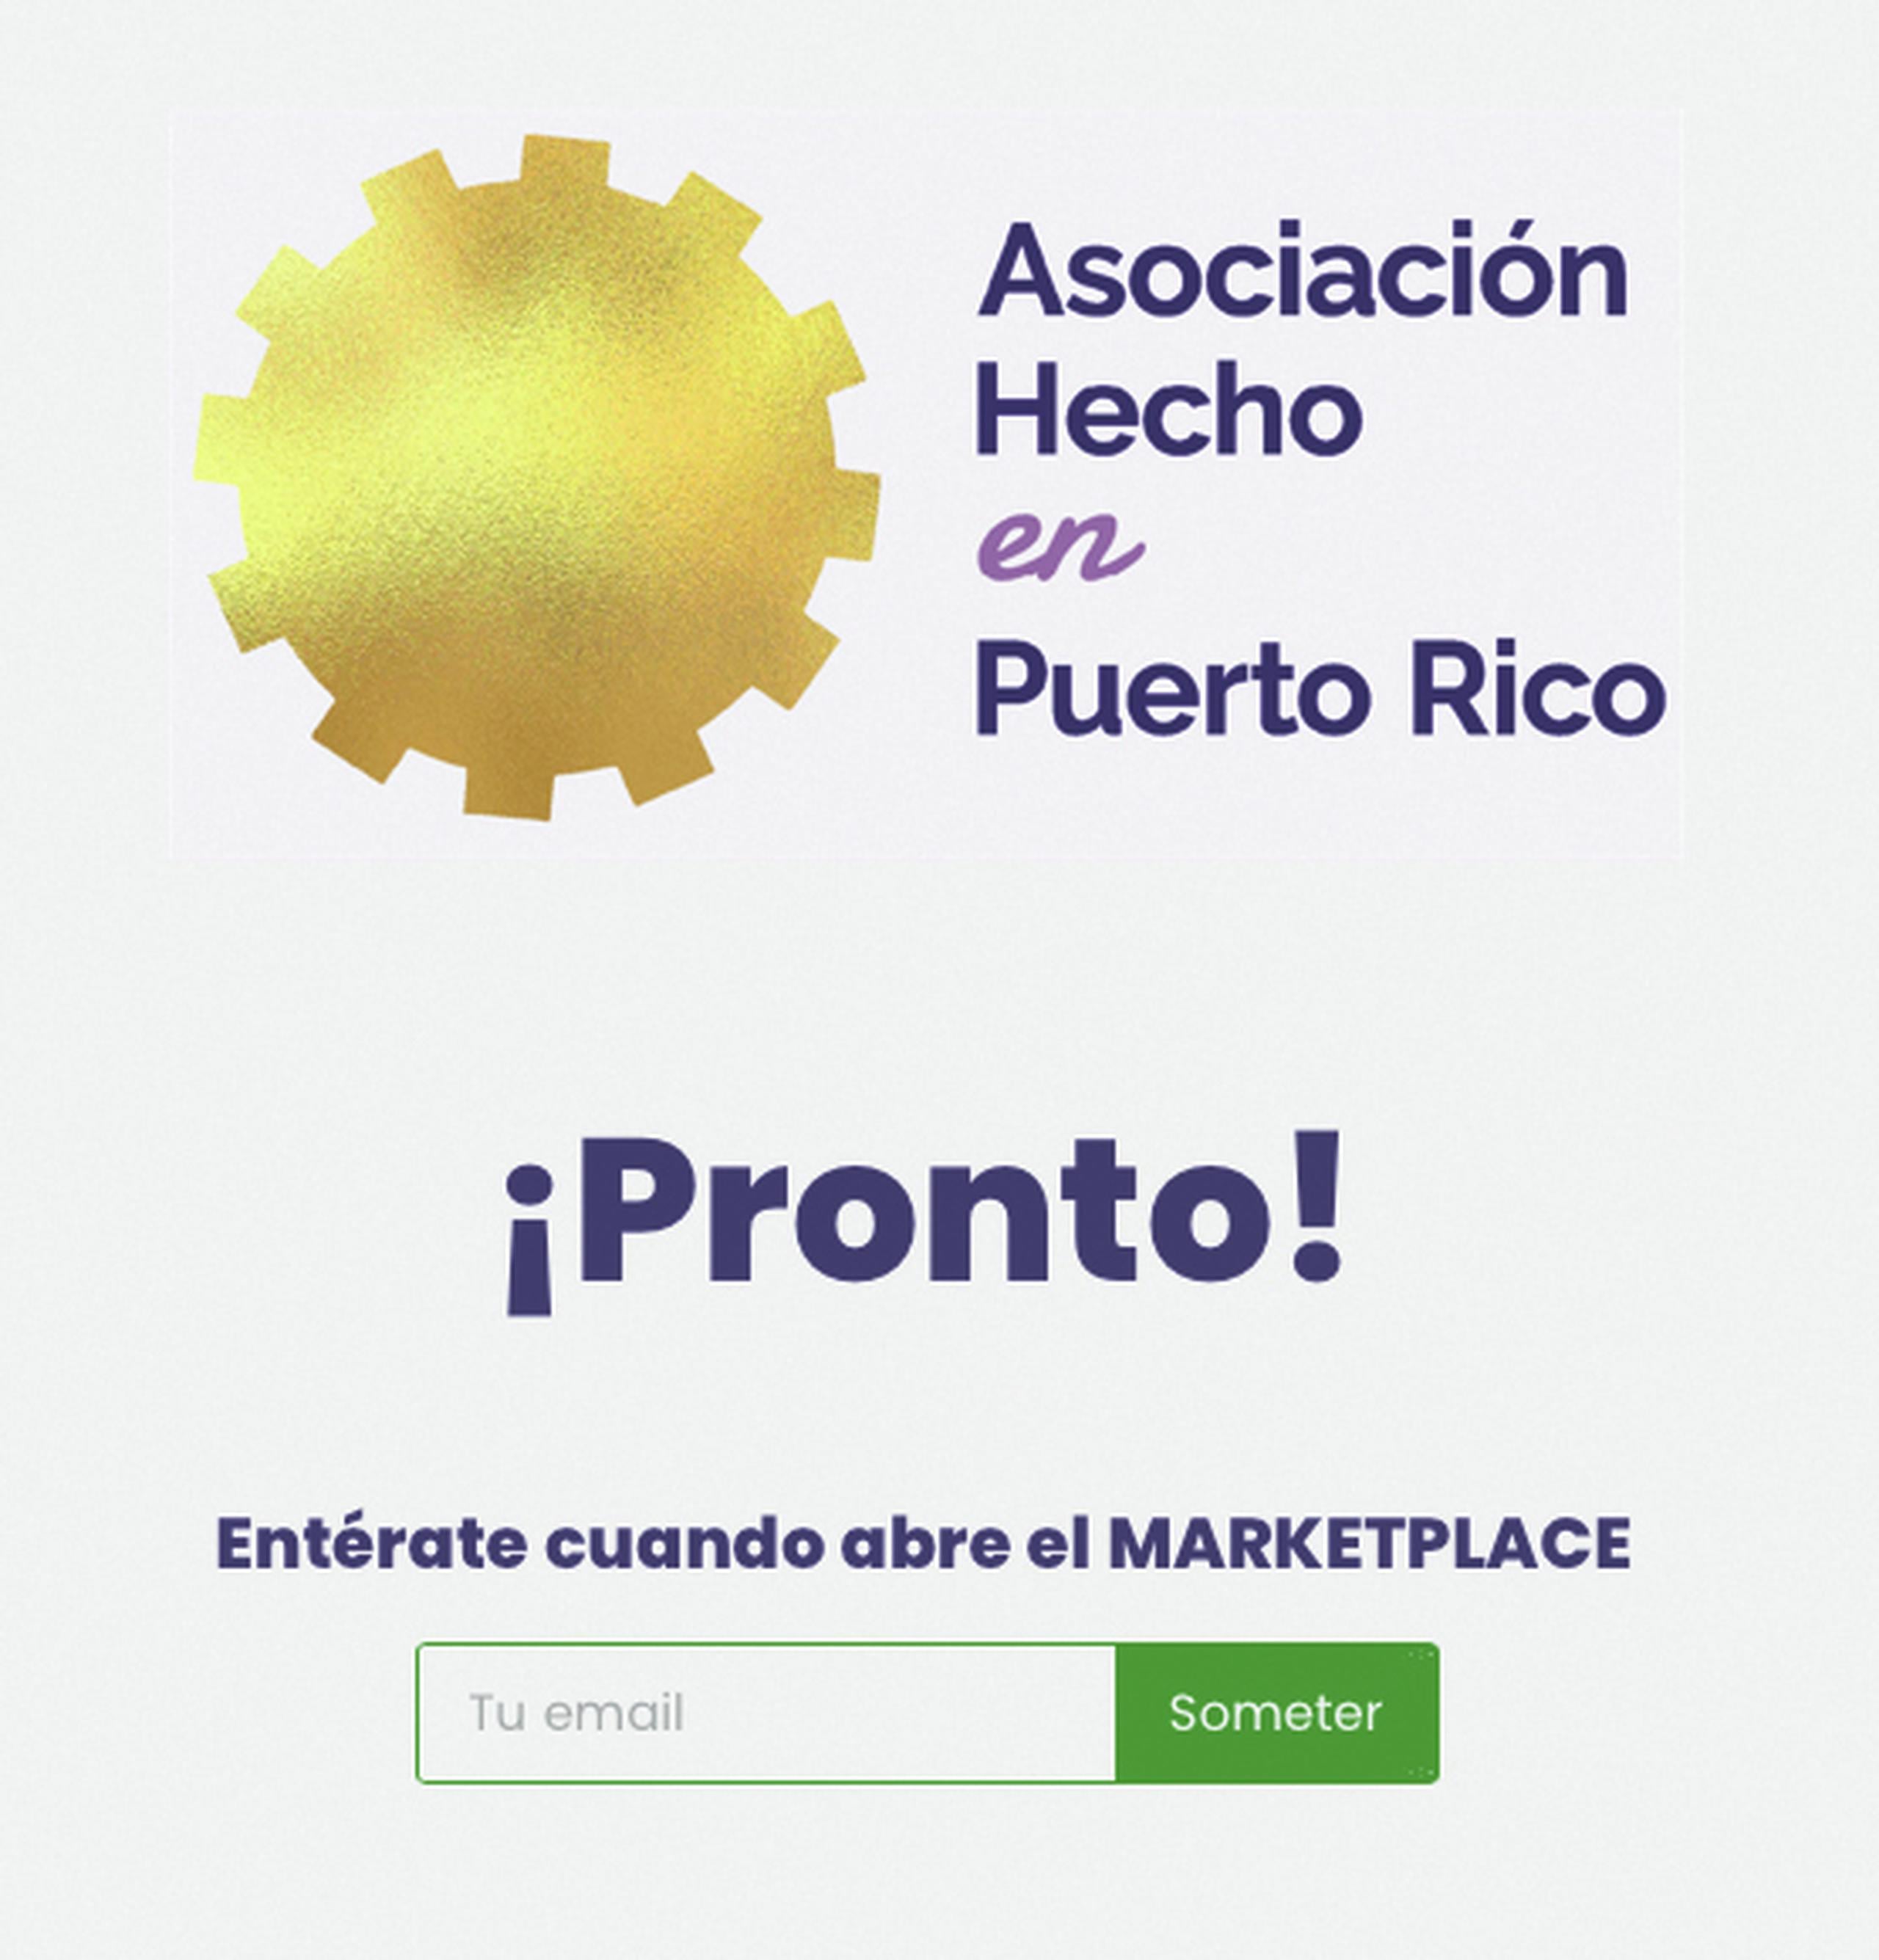 La Asociación Hecho de Puerto Rico (AHPR) se prepara para lanzar hoy jueves, 27 de abril, el Hecho en Puerto Rico Marketplace, una plataforma de comercio electrónico (e-commerce) dedicada a conectar a las empresas puertorriqueñas con clientes tanto dentro como fuera de la isla.